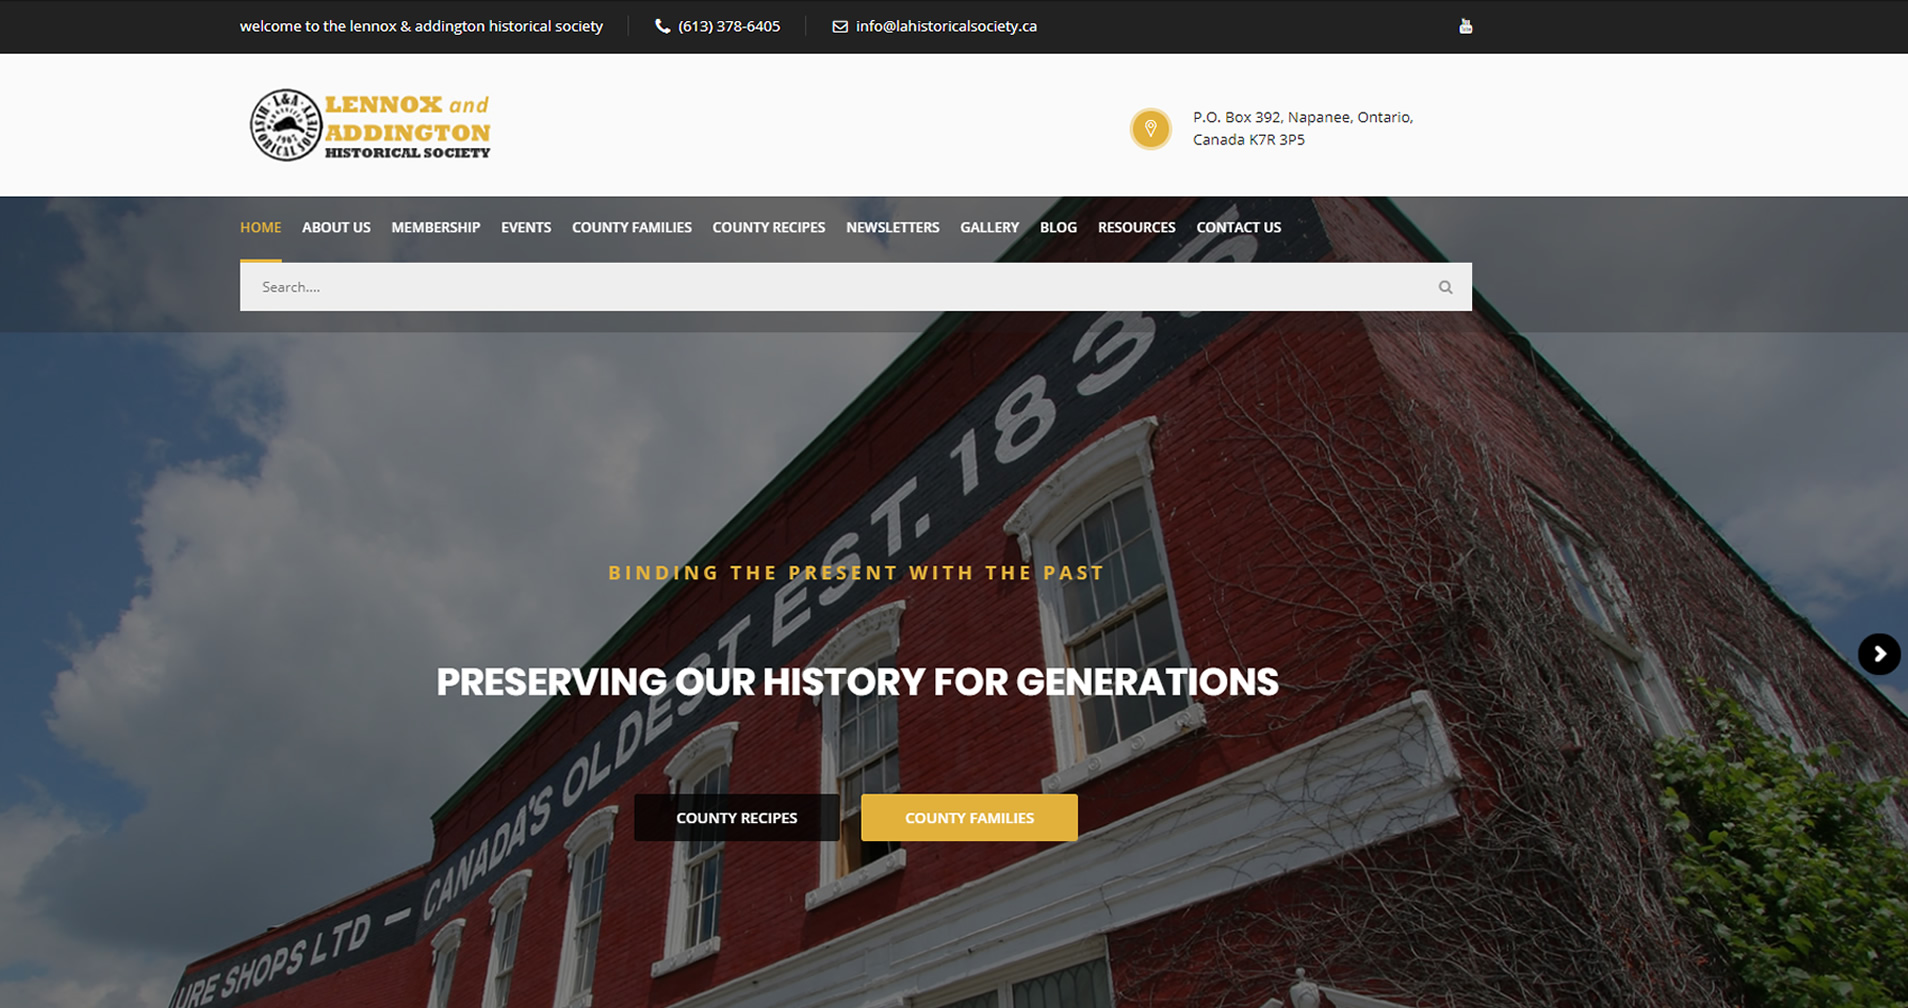 Mobile Website Design for Lennox & Addington Historical Society